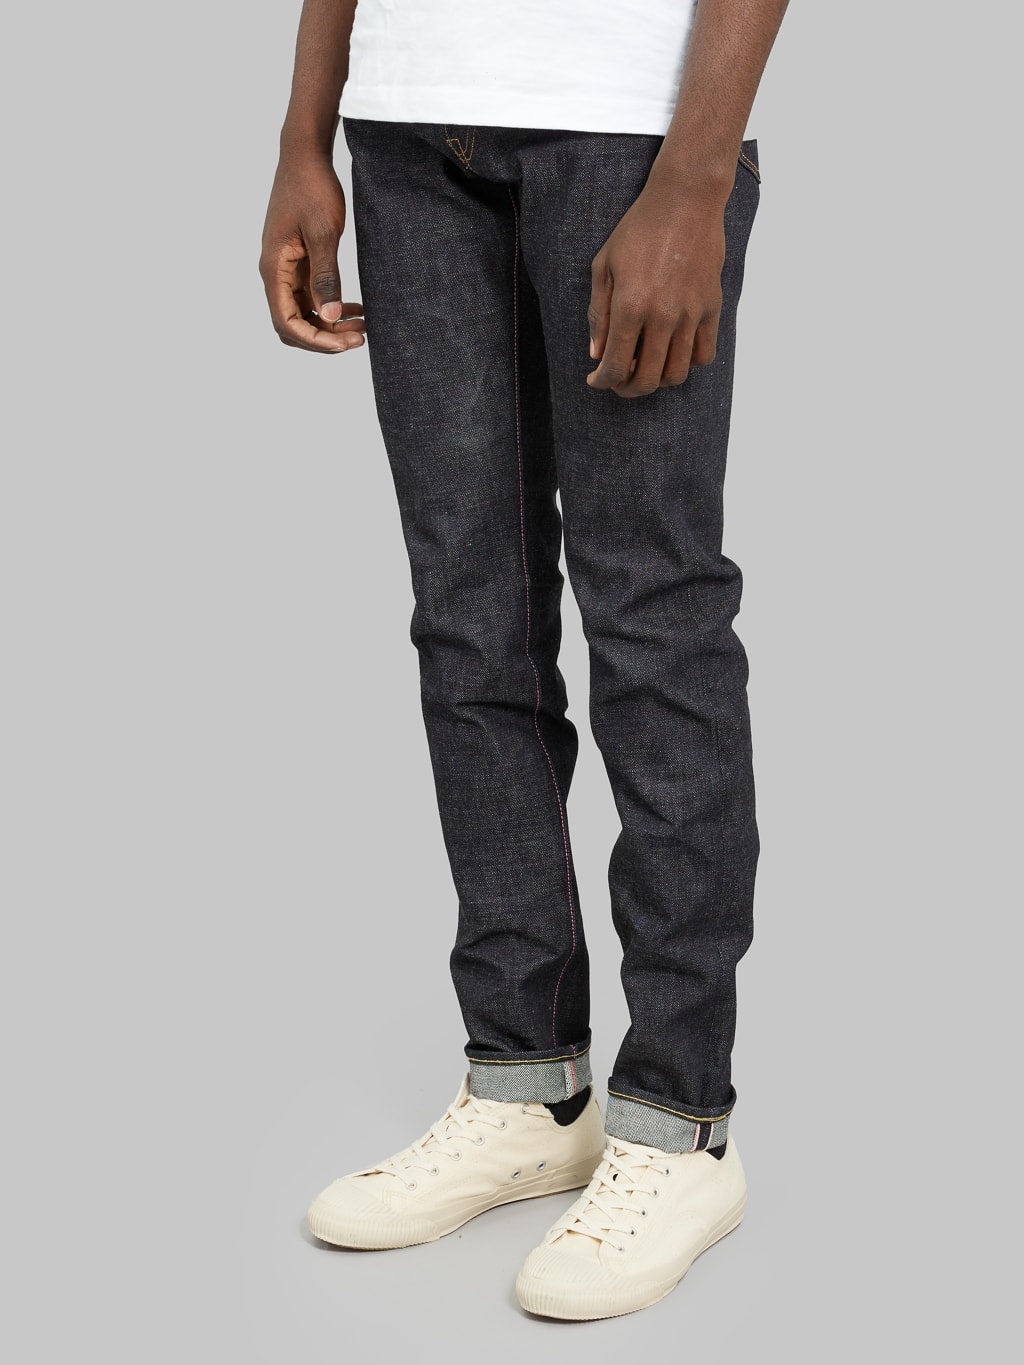 momotaro jeans 0405 v selvedge denim high tapered side fit